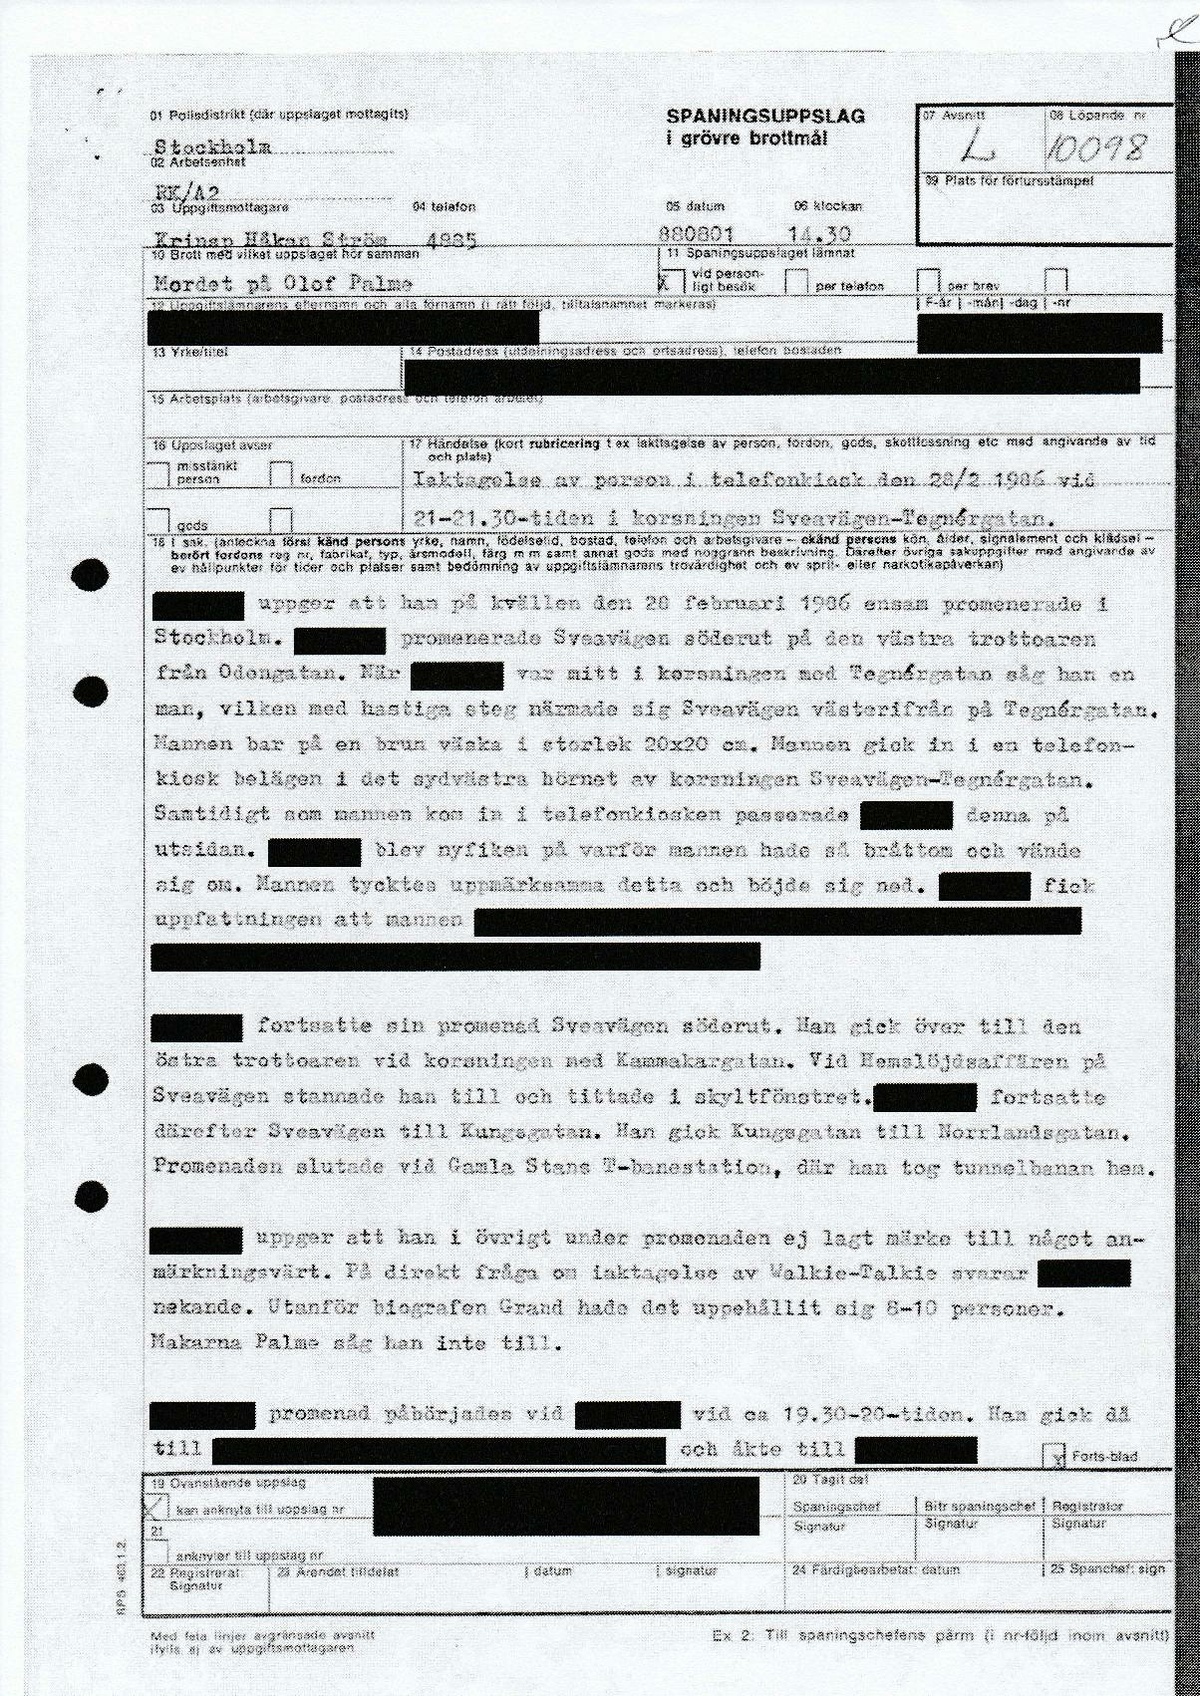 Pol-1988-08-01 L10098-00 iakttagelse av person i telefonkiosk.pdf